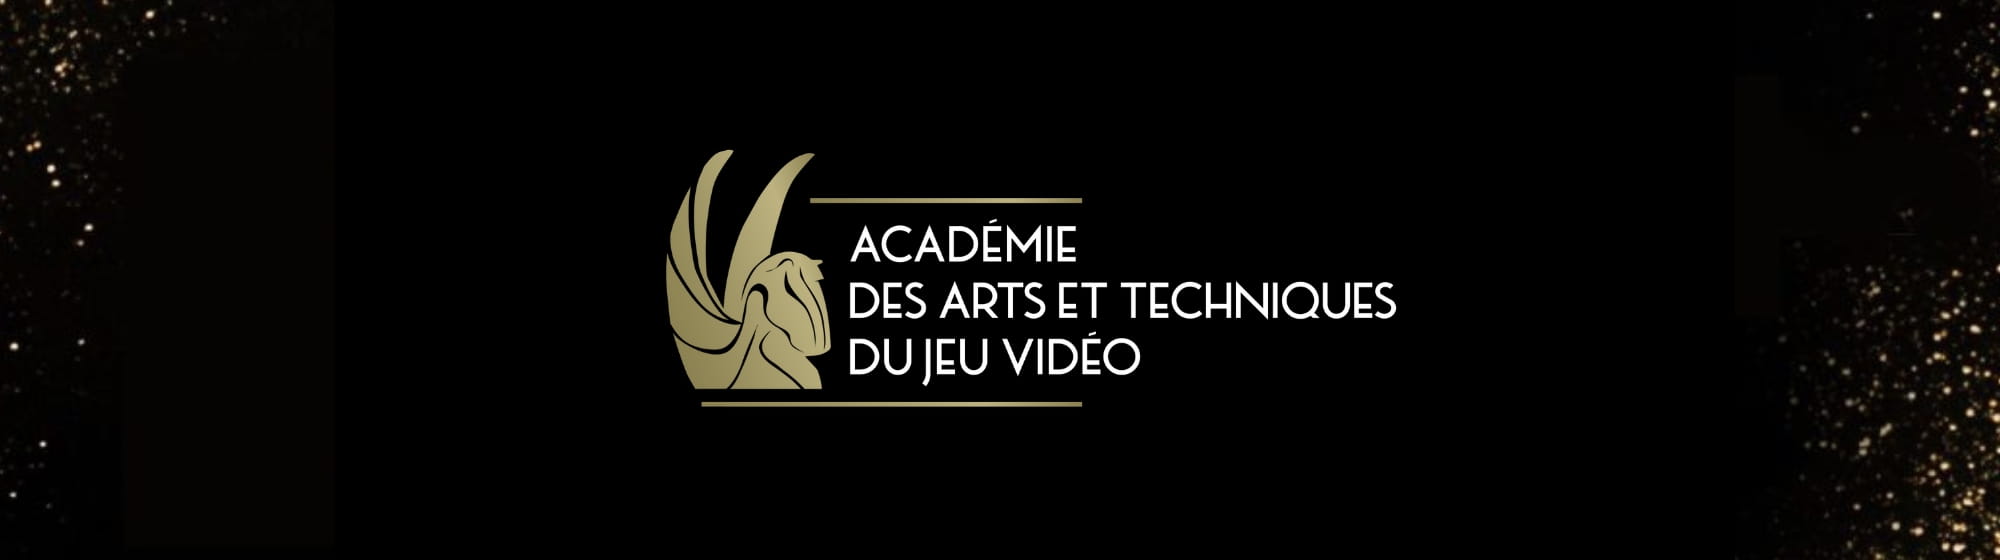 Dark visual with Académie des arts et techniques du jeu vidéo logo banner size